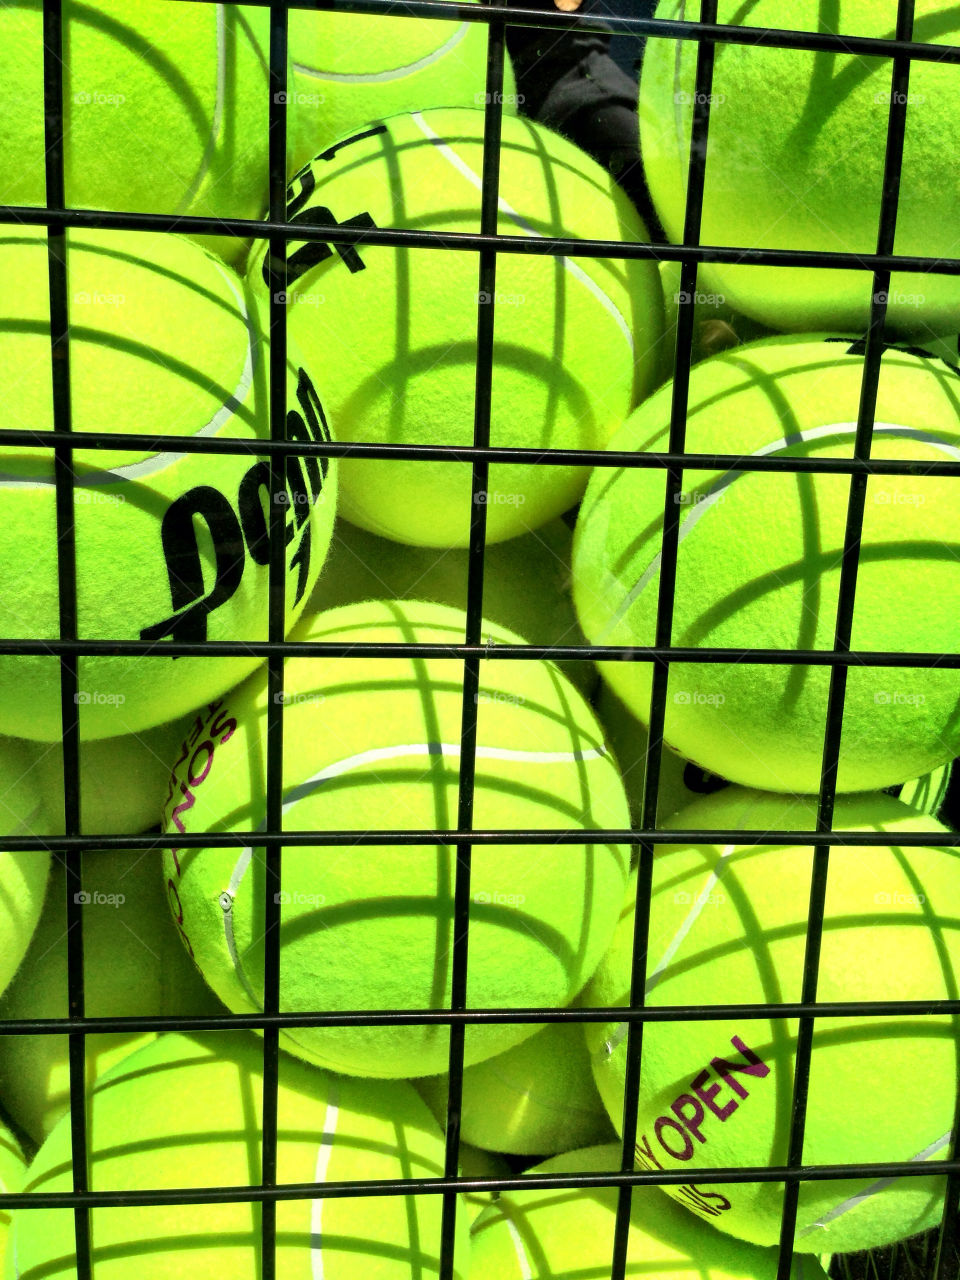 Tennis balls in a basket